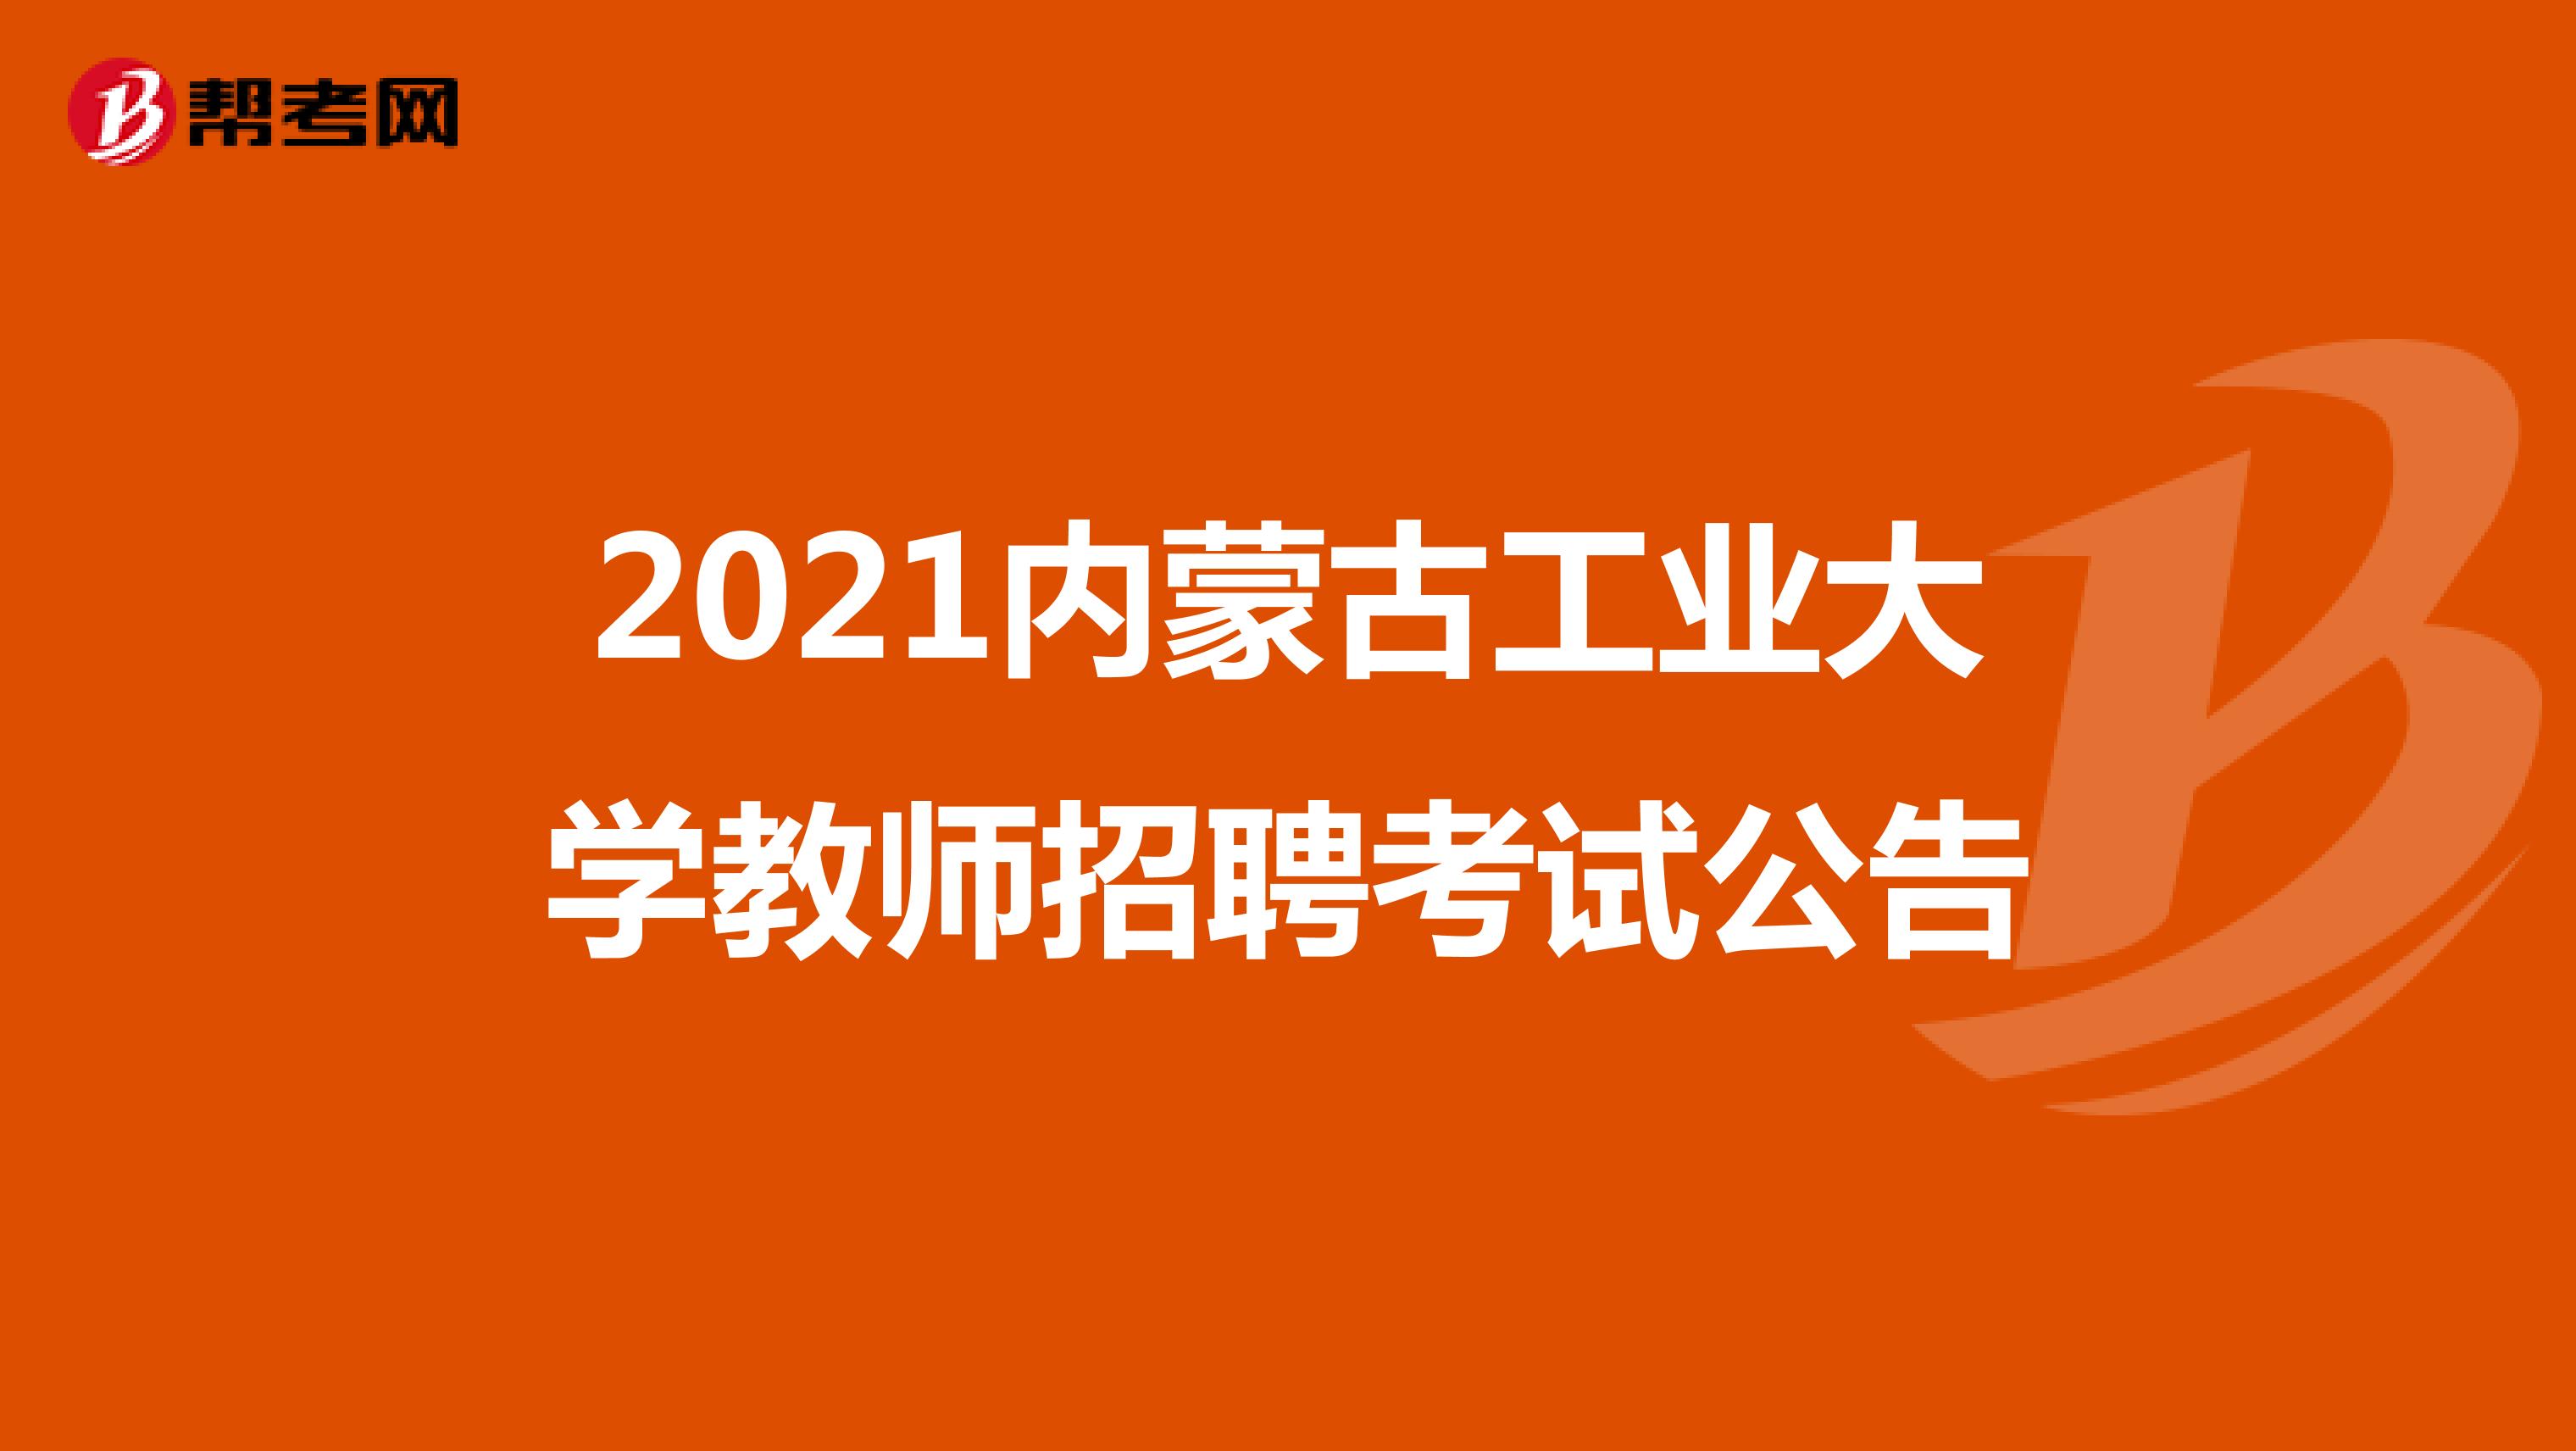 2021内蒙古工业大学教师招聘考试公告